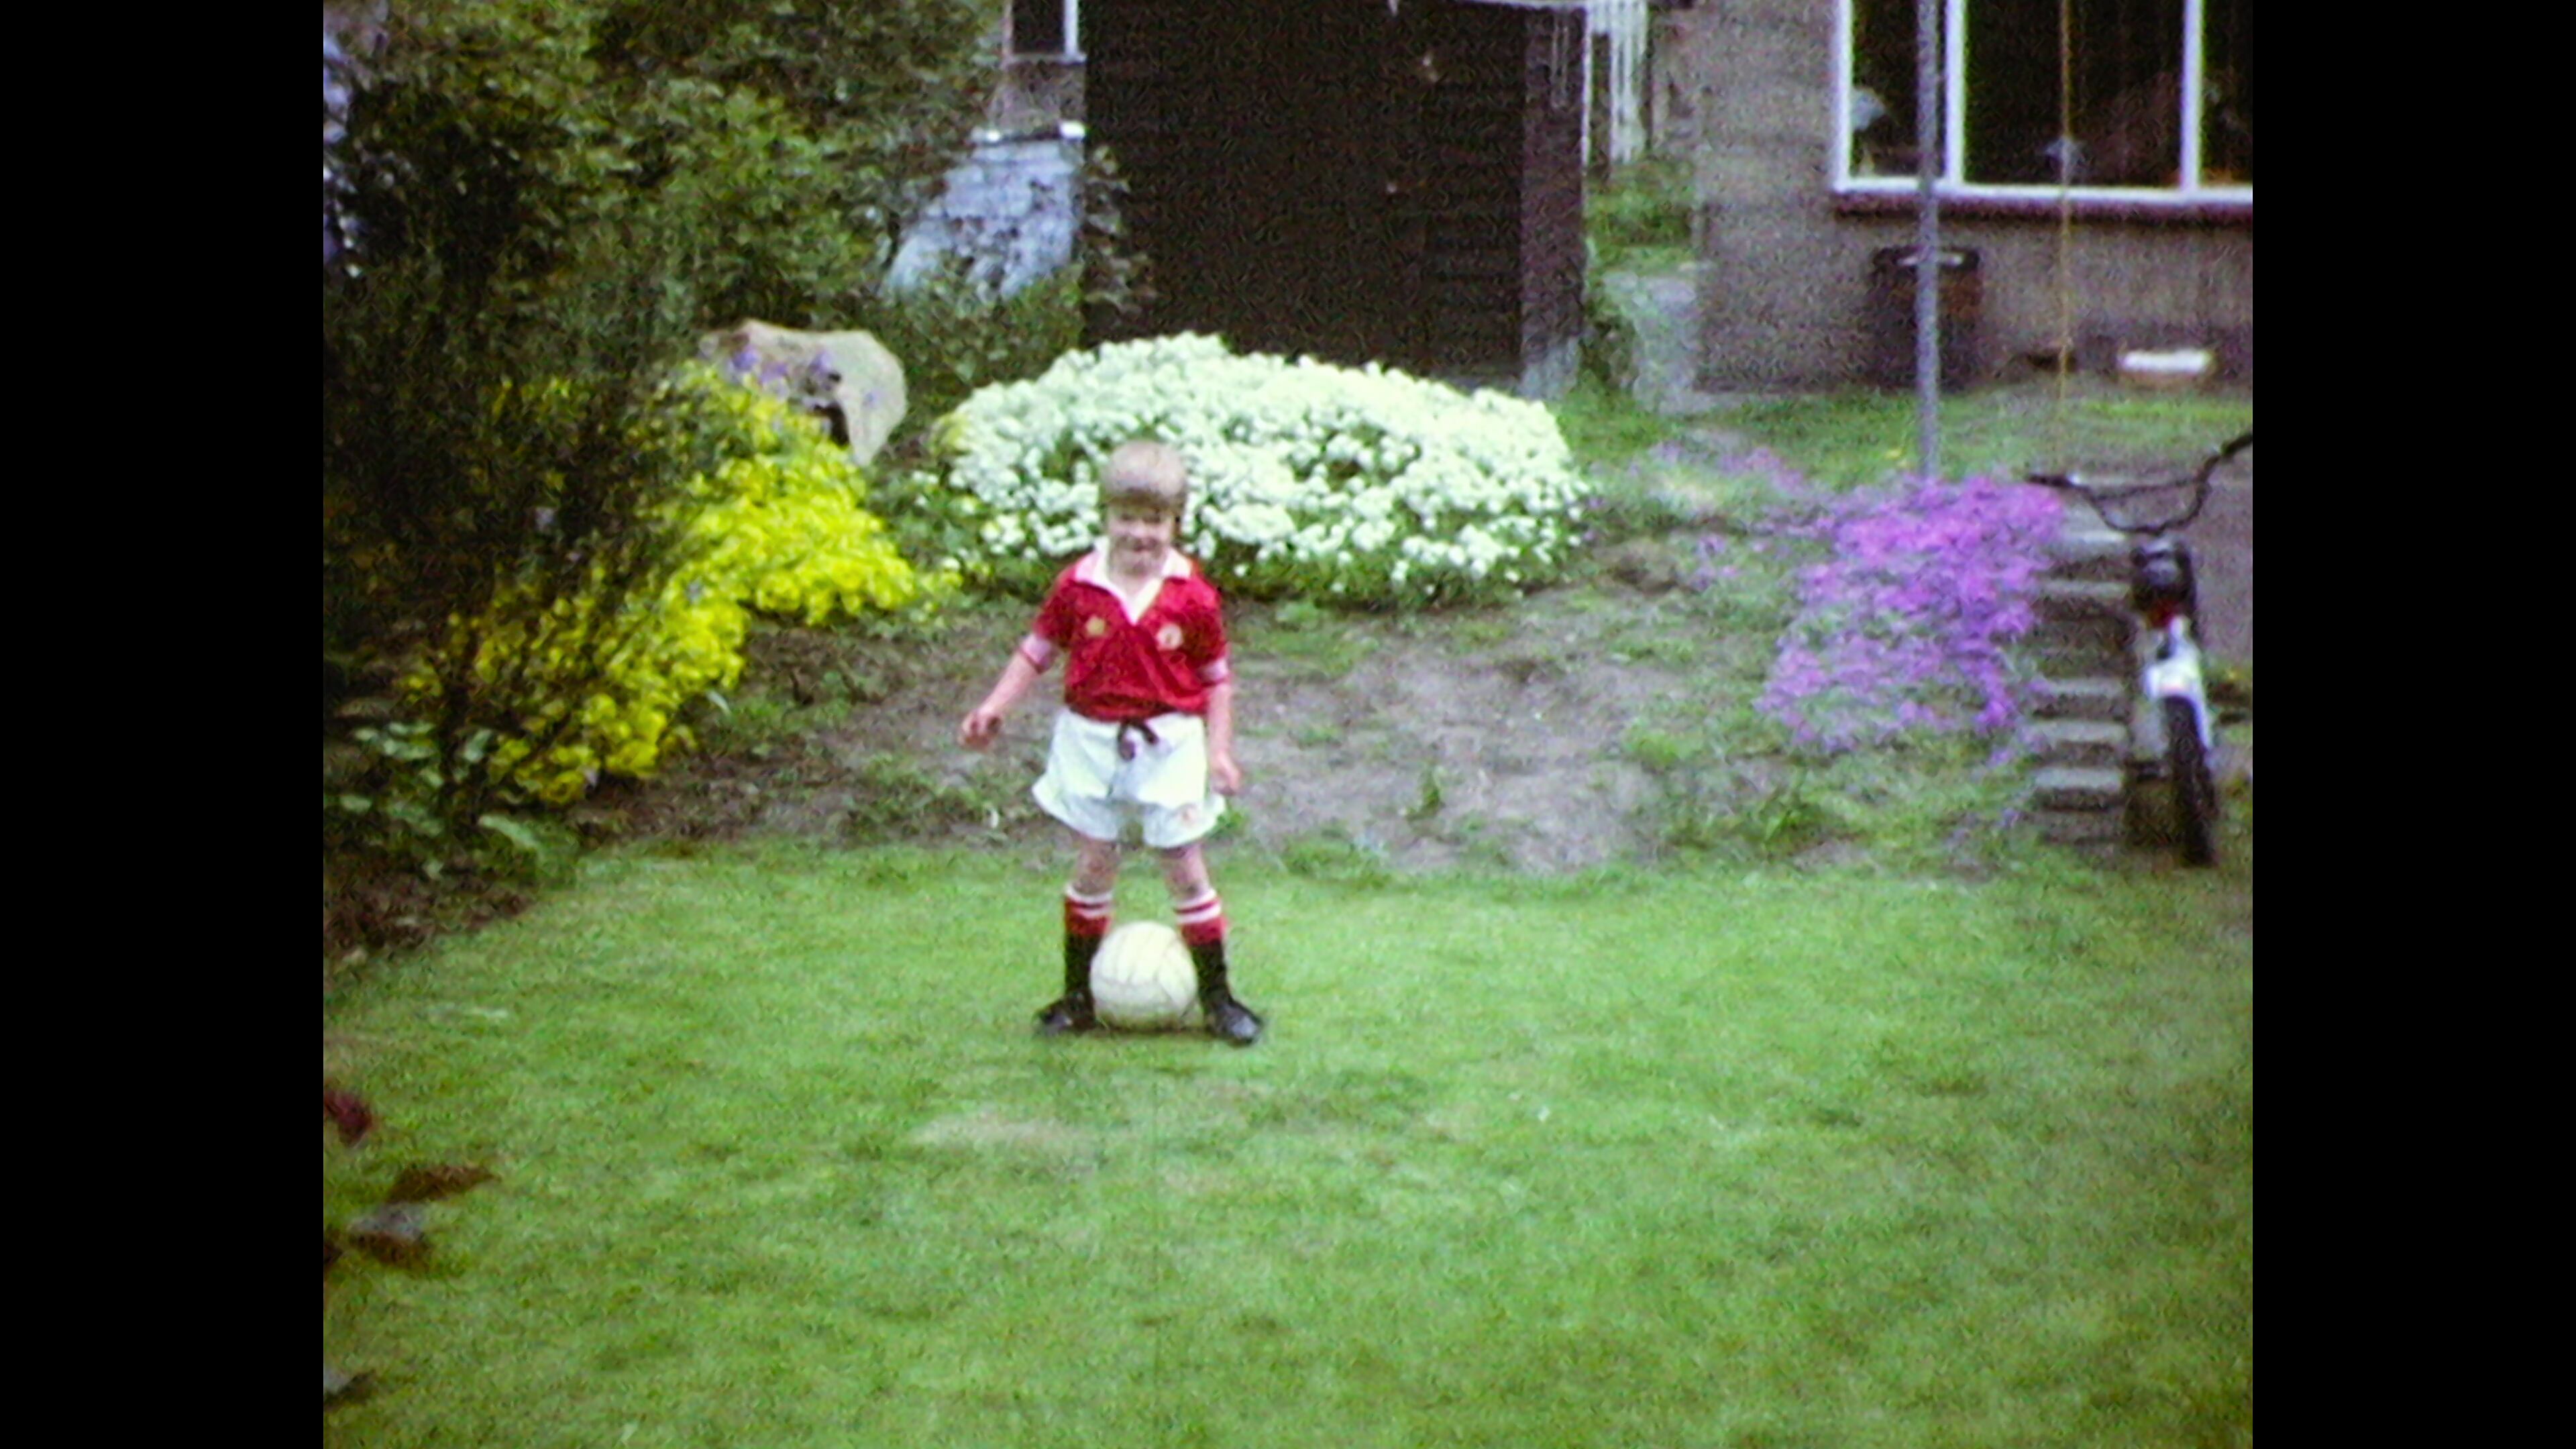 David Beckham, con la equipación del Manchester United, en una de las imágenes del álbum familiar que se muestran en su serie documental.